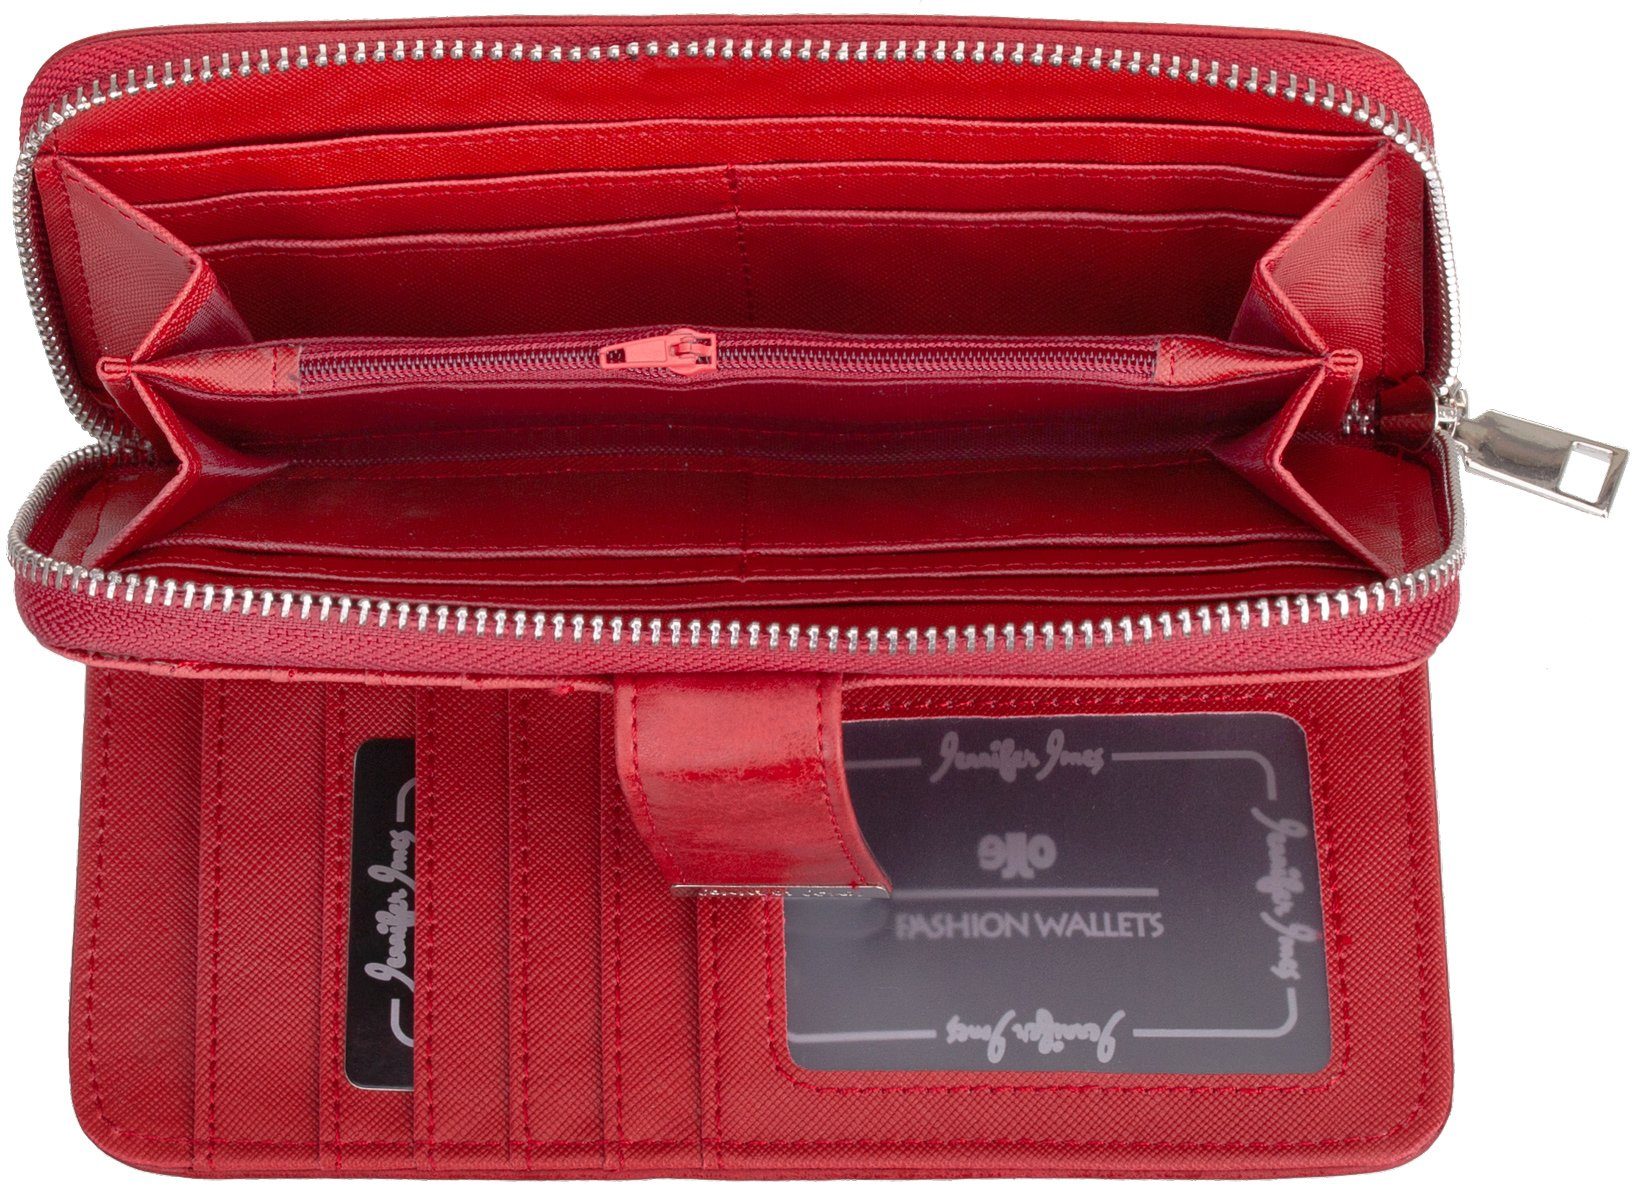 Jennifer Jones Geldbörse, Geldbörse Reißverschluss Damen mit klappbar Geldbeutel Portemonnaie rot